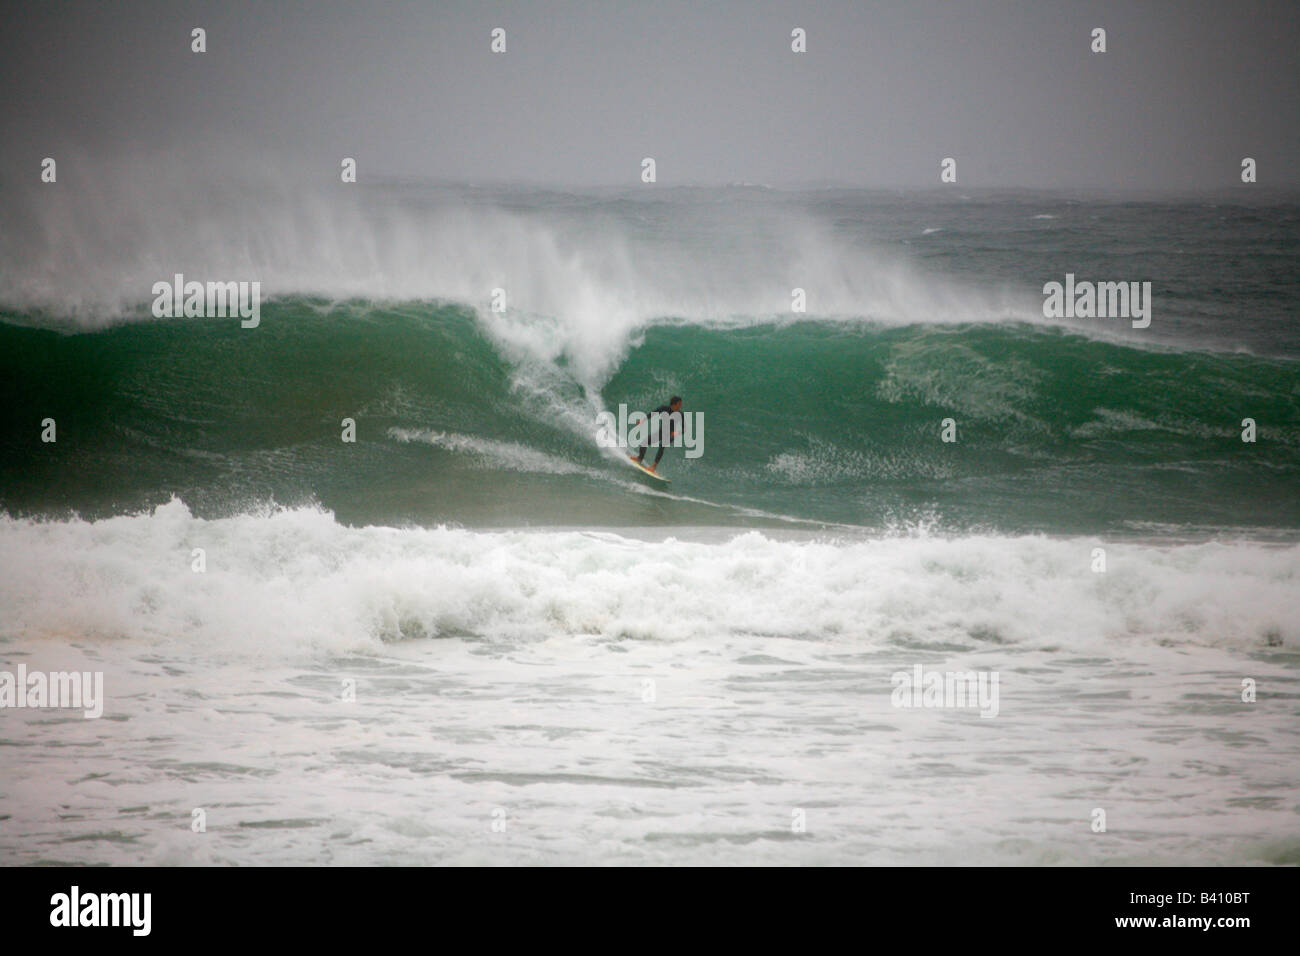 Eine Surfer arbeitet eine Welle am Manly bei Sturm Wetter Stockfoto